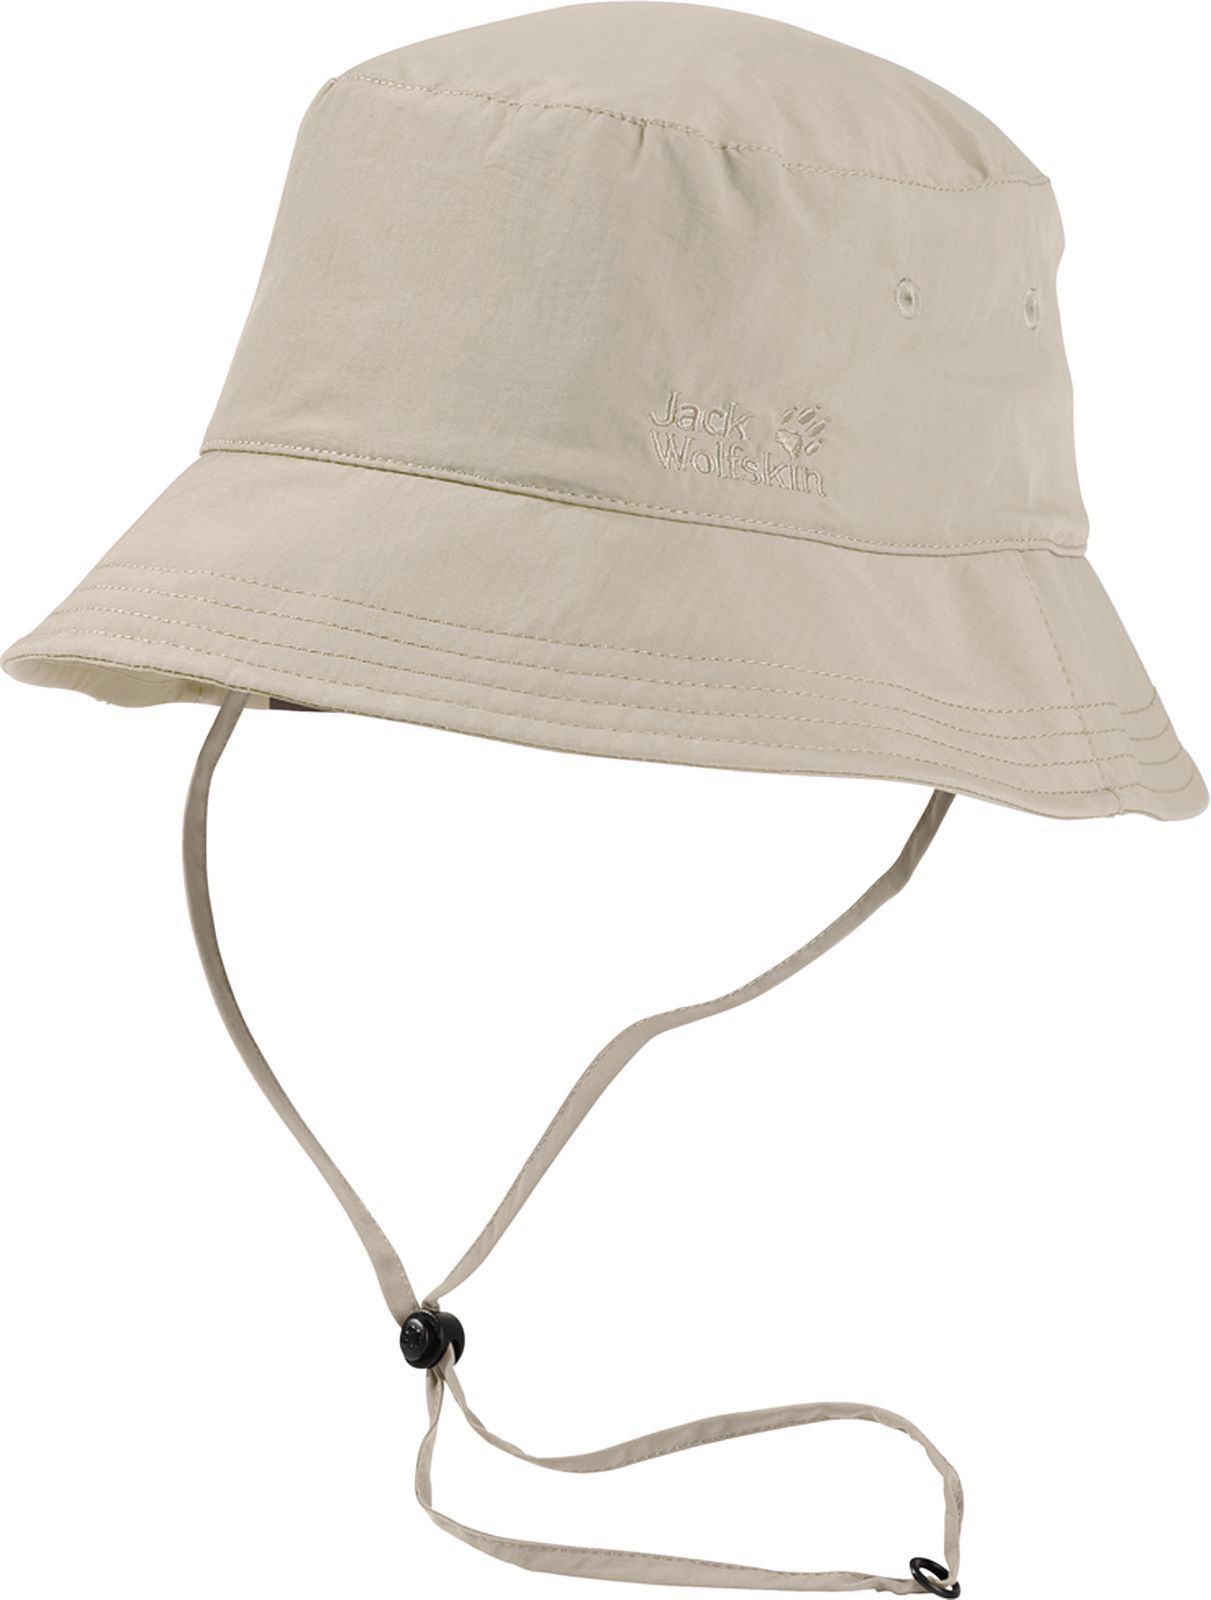  Jack Wolfskin Supplex Sun Hat, : . 1903391-5505.  L (57/60)